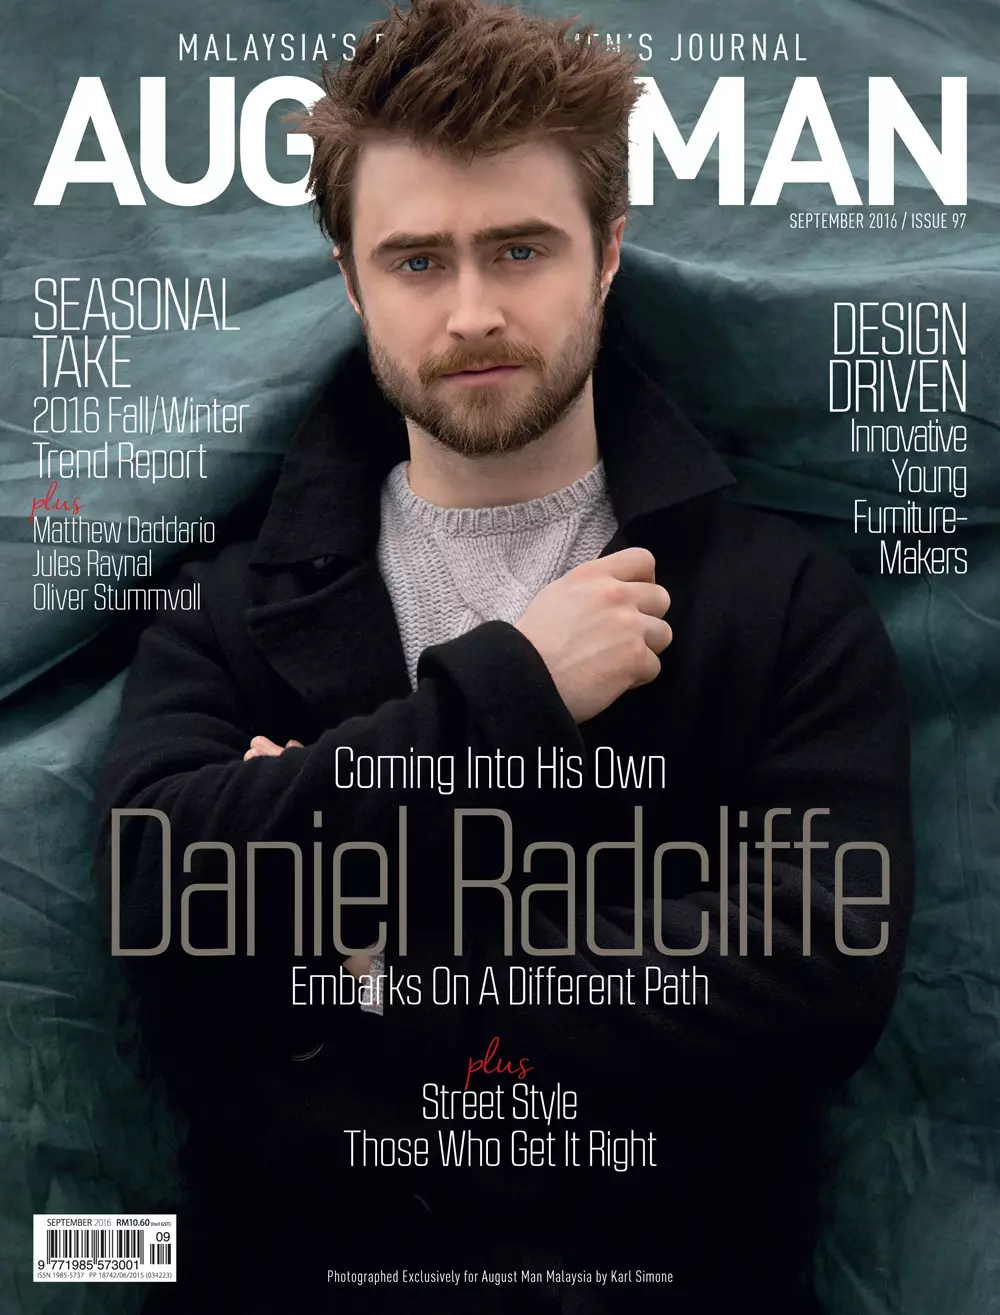 Ko ne bi pomislio, glumac + Daniel Radcliffe glumi u novom septembarskom izdanju za avgust 2016. Man Malaysia kojeg je fotografirao Karl Simone i stilizirao Jenesee Utley, nema Daniela koji se odlučuje da krene drugačijim putem.